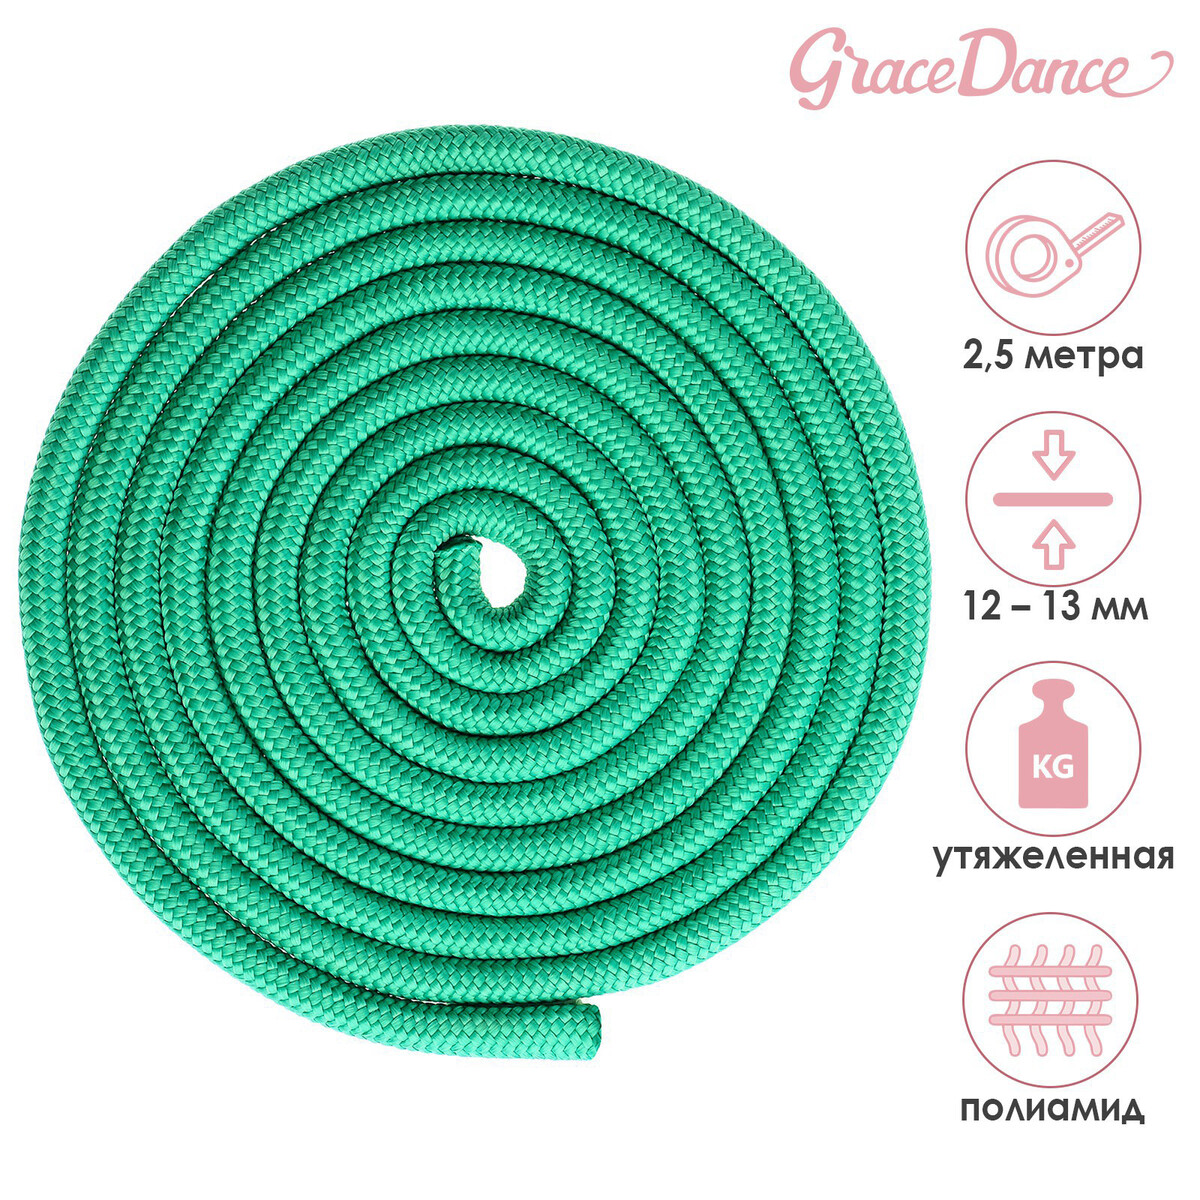 Скакалка для художественной гимнастики утяжеленная grace dance, 2,5 м, цвет зеленый Grace Dance